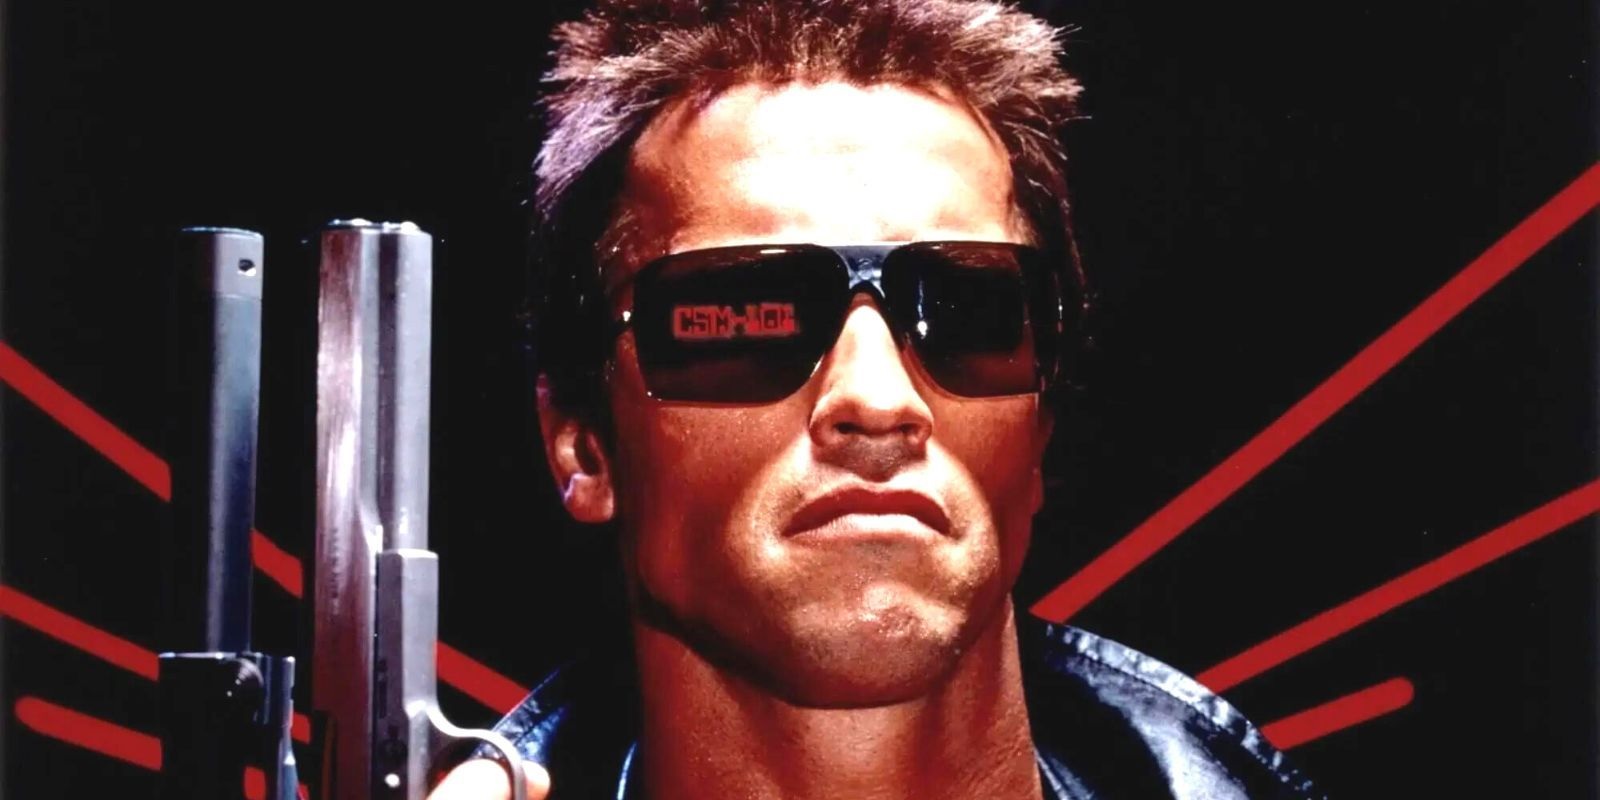 Arnold Schwarzenegger em O Exterminador do Futuro (Reprodução)